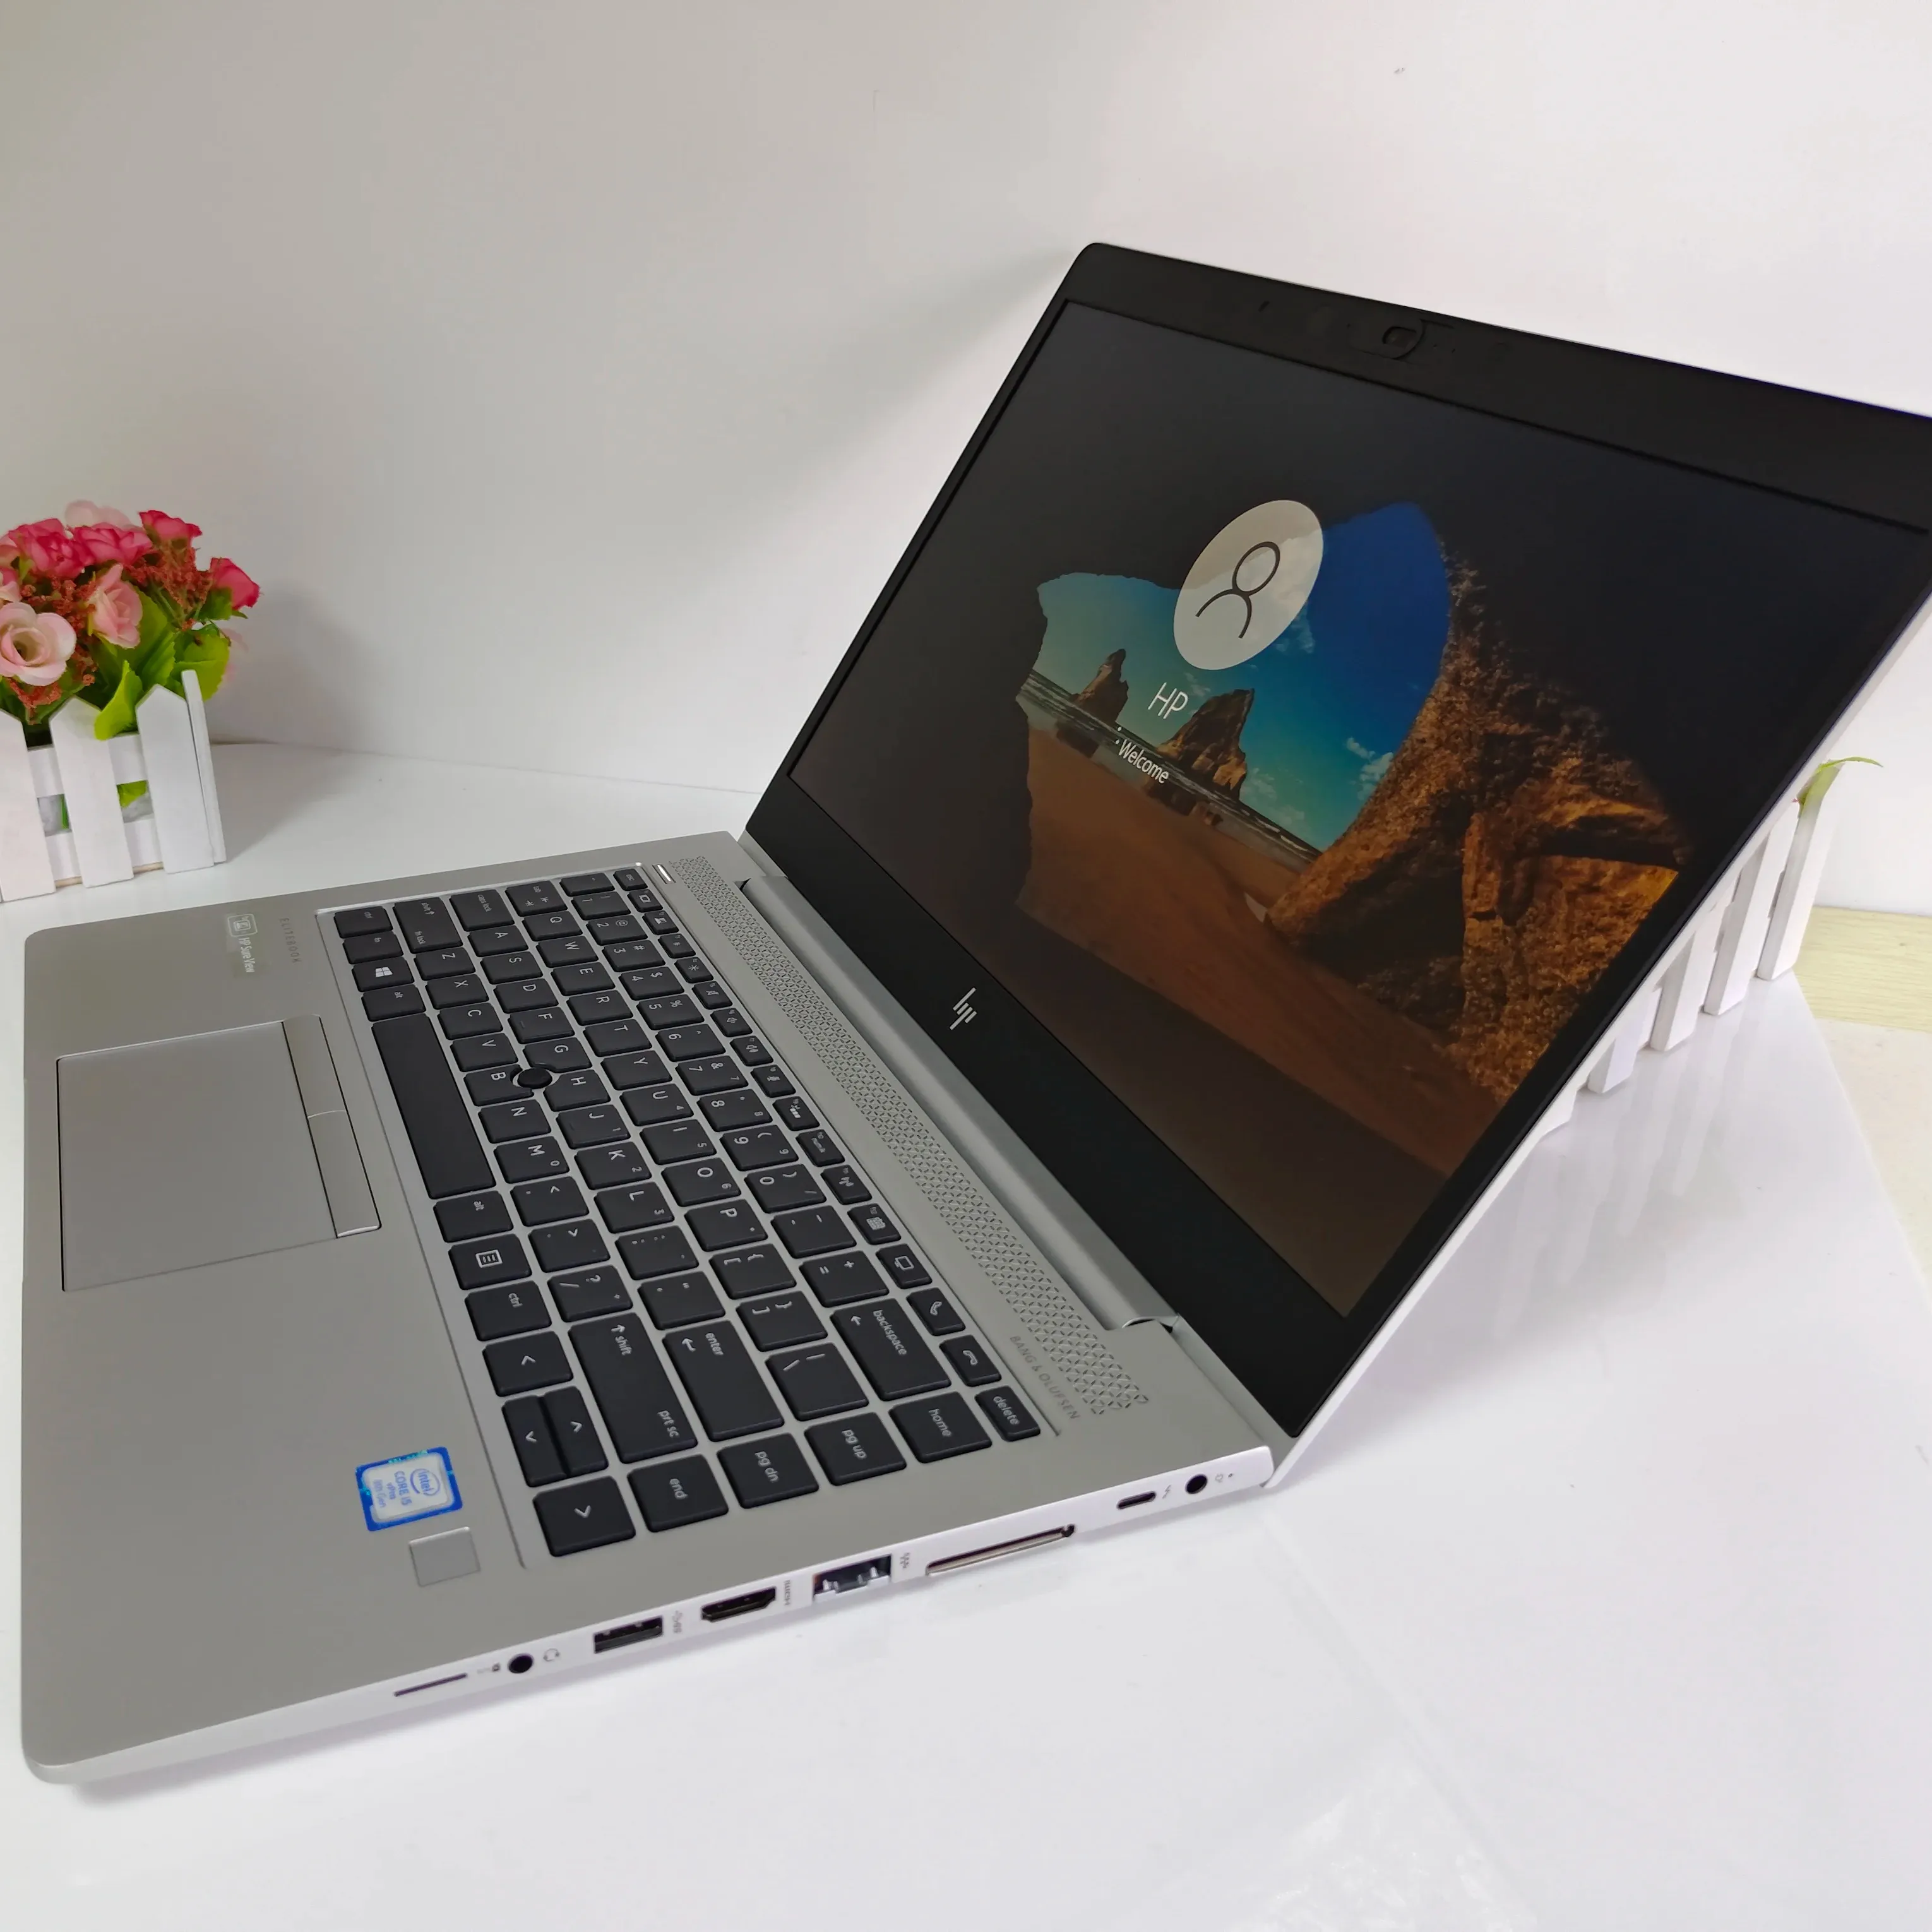 लैपटॉप कोर i7 16GB एचपी कोर i7 11 जनरेशन प्रिंटर एलीटबुक 840 g5 i5-8th एचपी एनवी टच स्क्रीन स्पेक्टर x360 एचपी लैपटॉप इस्तेमाल किया गया